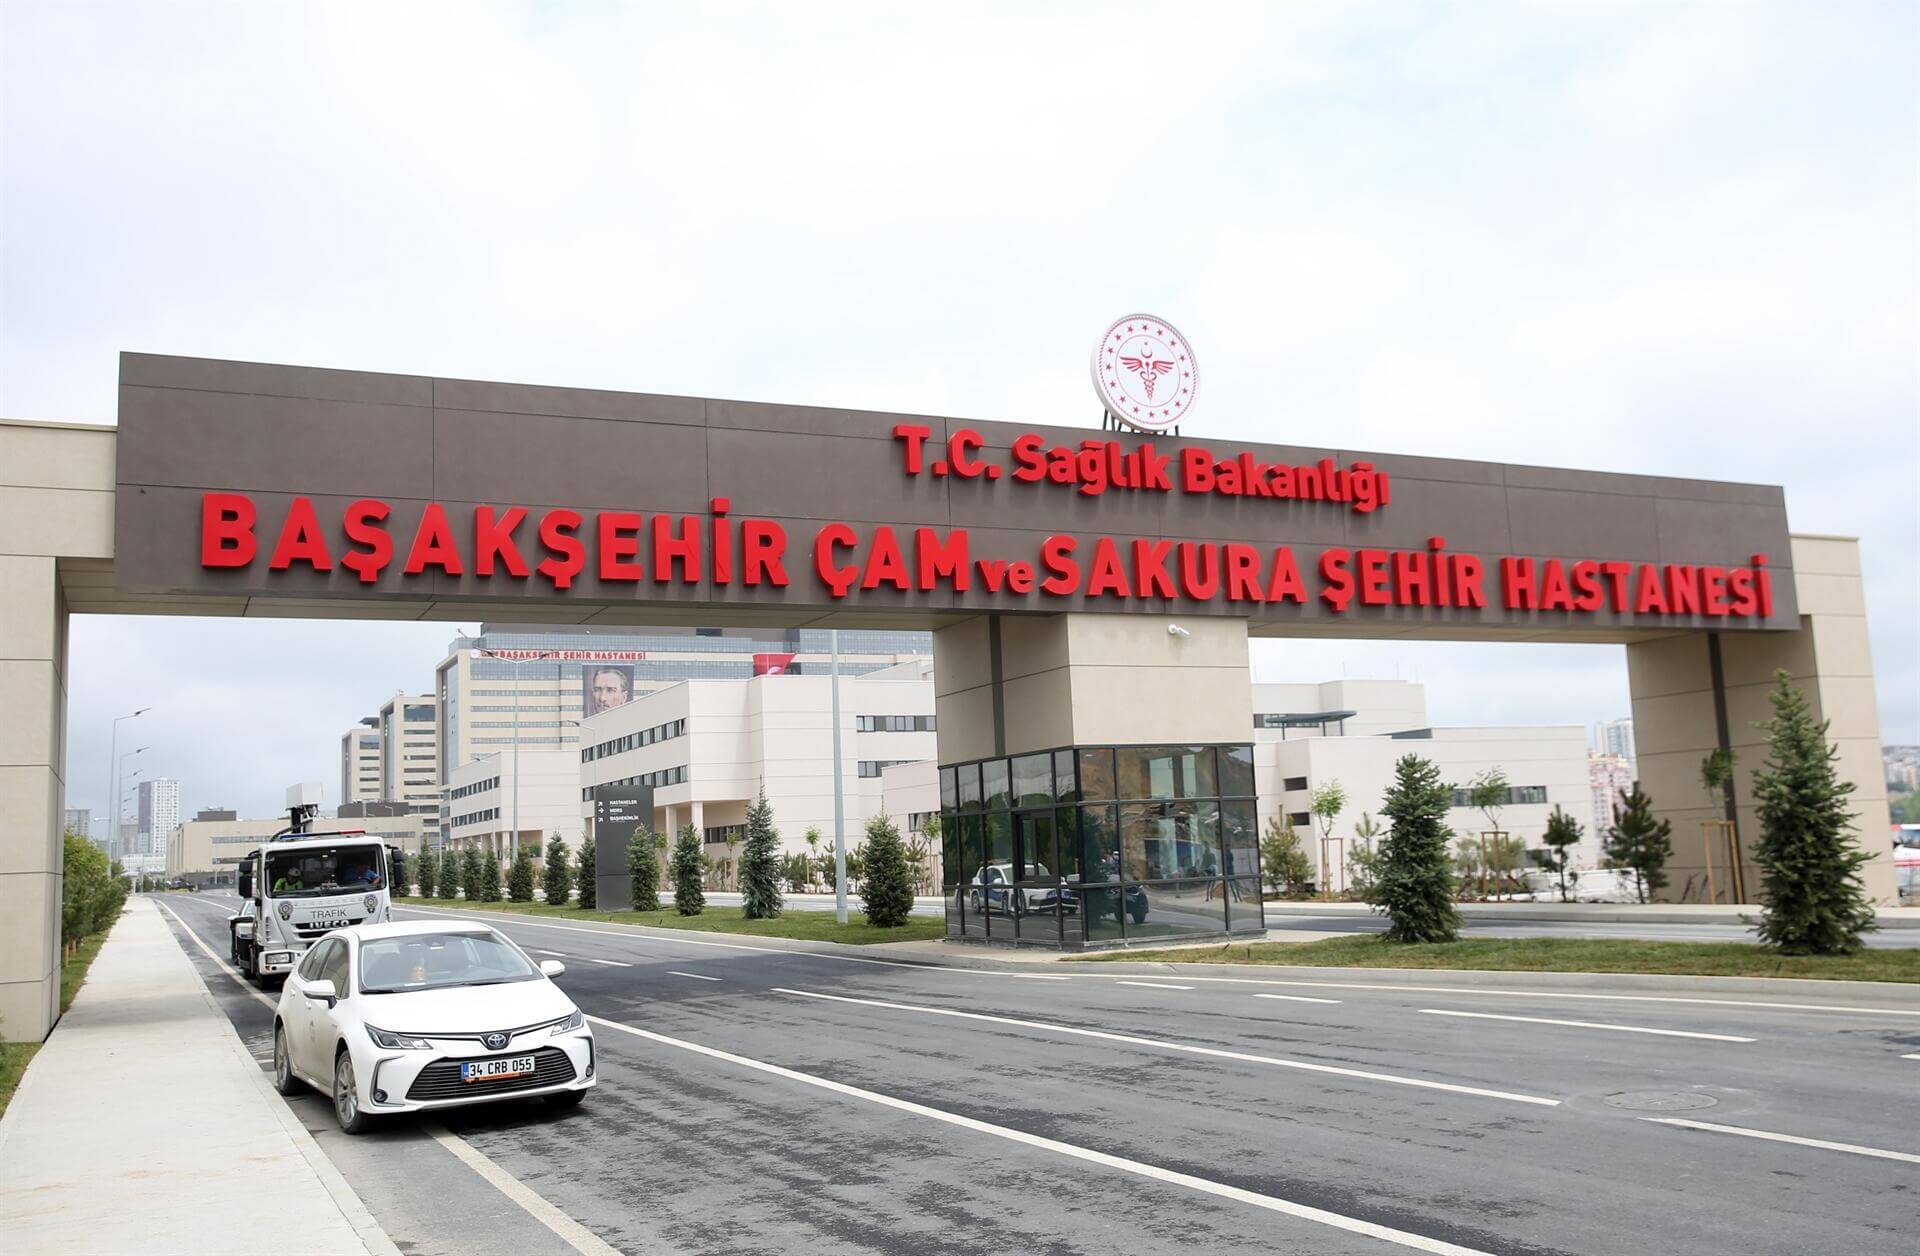 Basakşehir Medical City in Istanbul